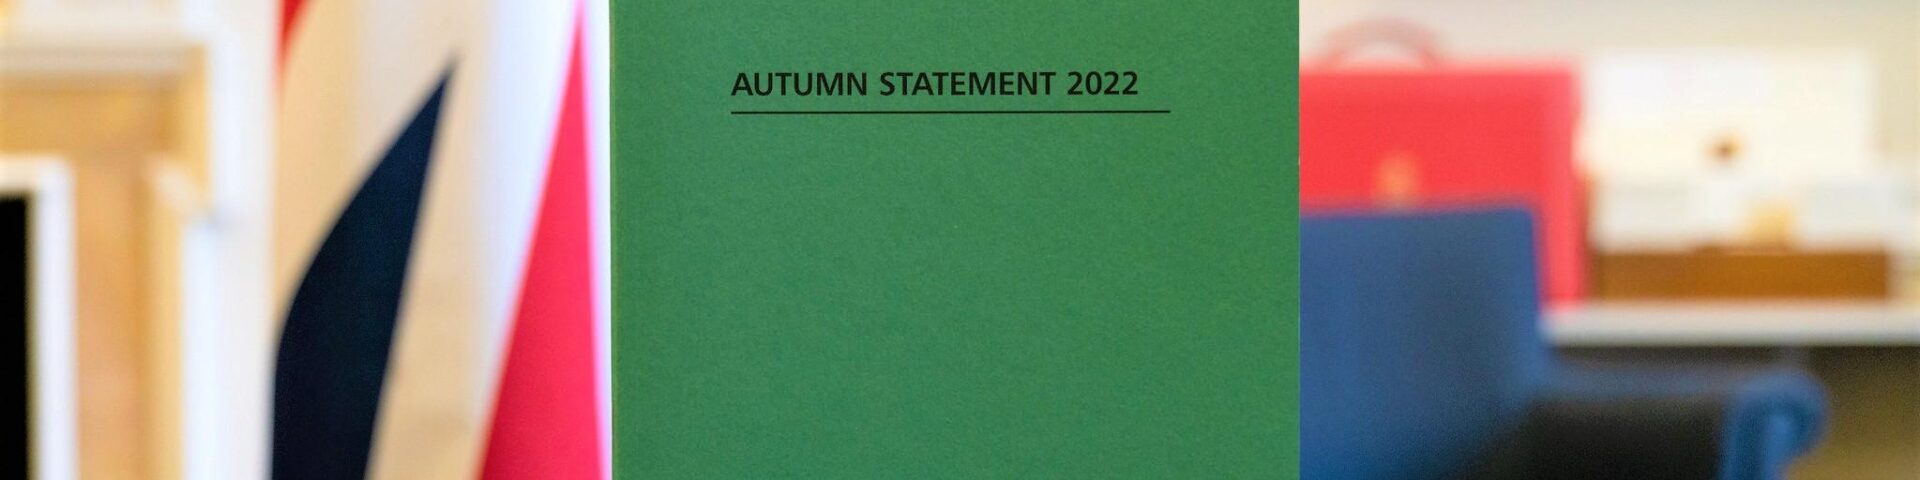 autumn statement